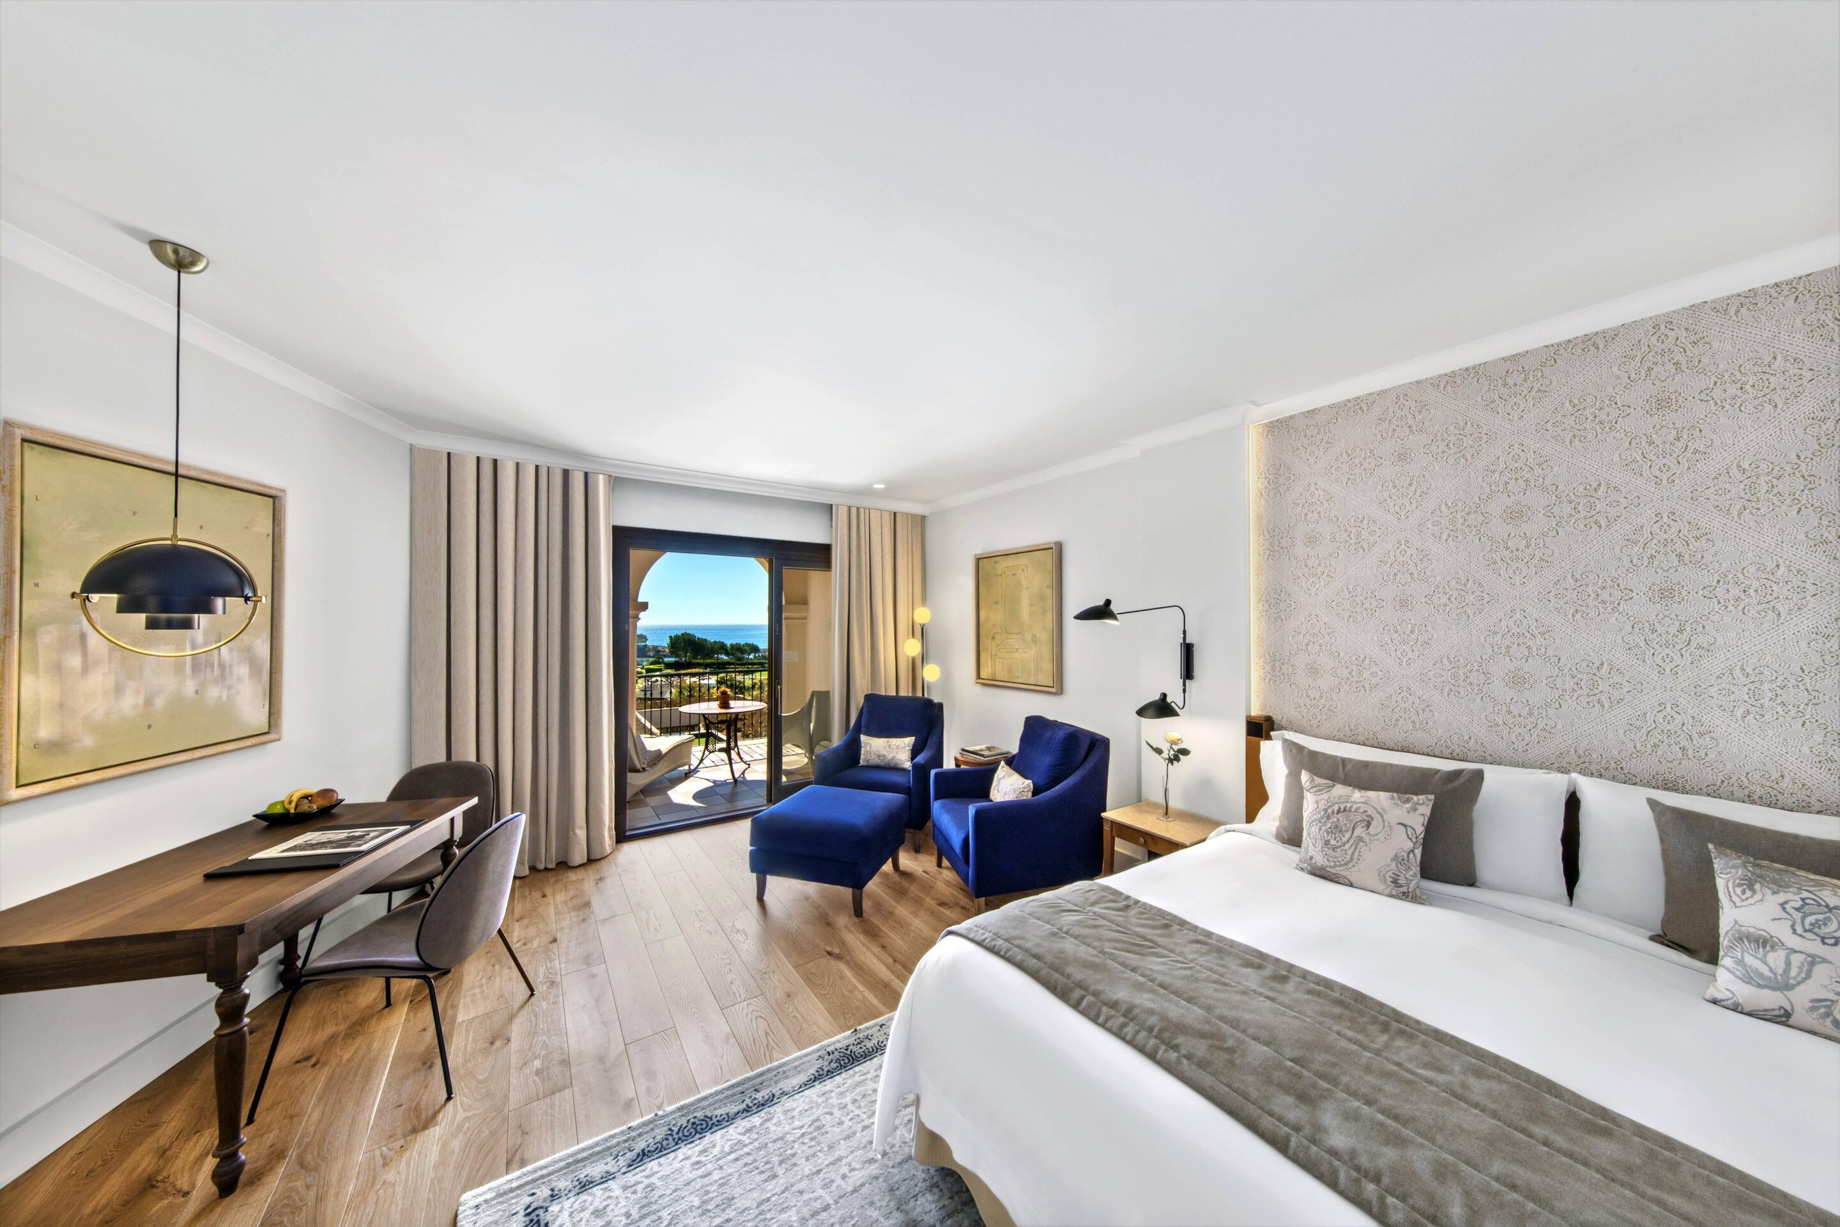 The St. Regis Mardavall Mallorca Resort – Palma de Mallorca, Spain – Grand Deluxe Bedroom Sea View Bed